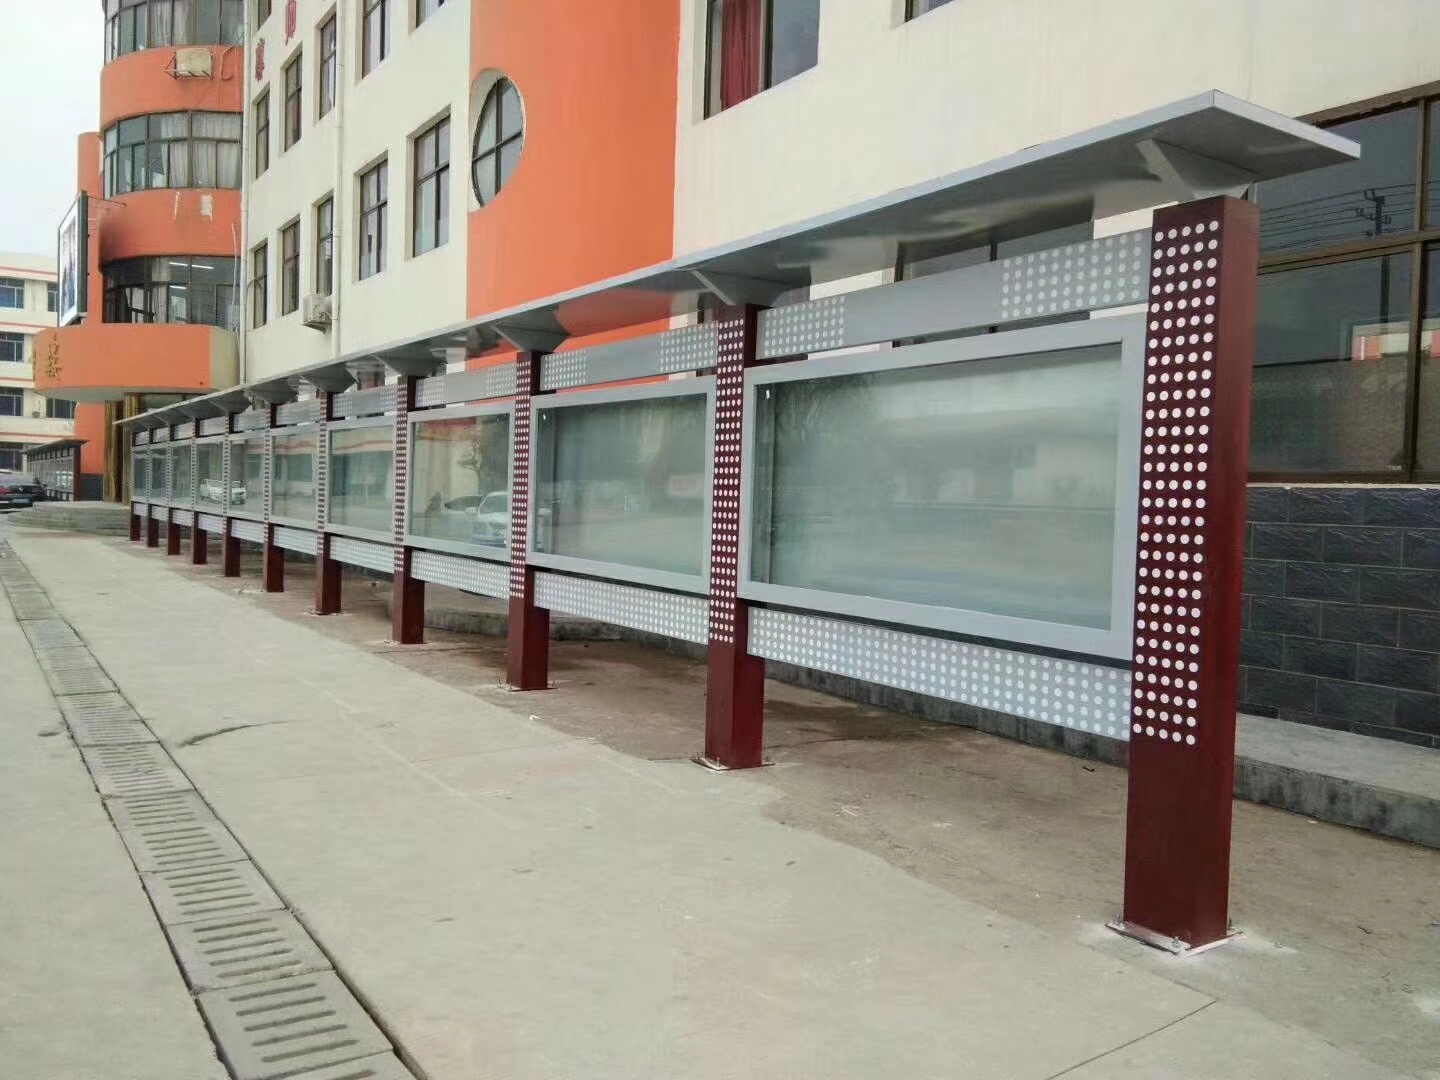 连云港赣榆新世纪花园小区180米宣传栏安装完成  2019年7月